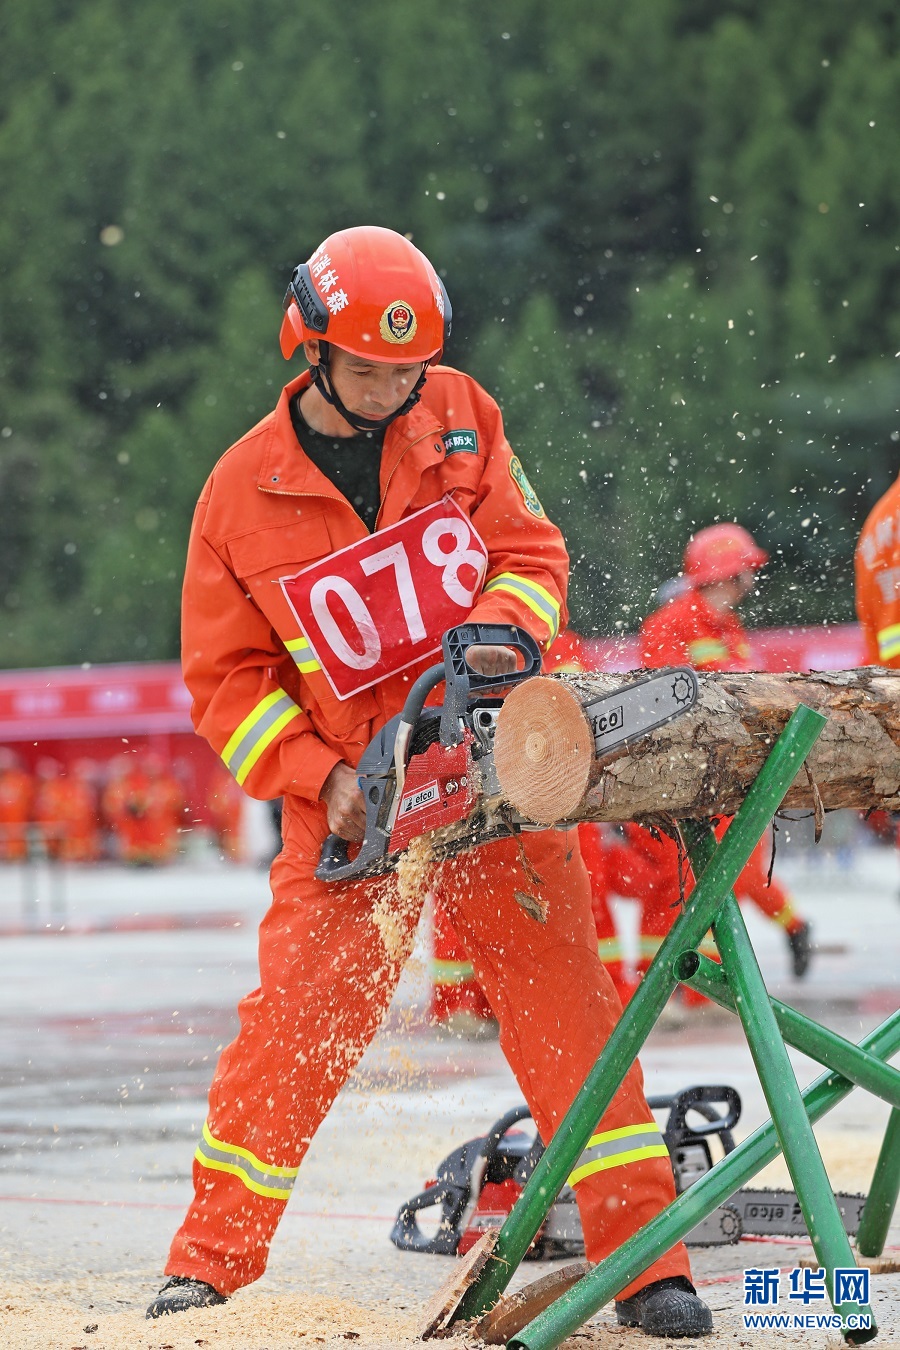 重庆:森林消防"大比武"来了 200名消防队员同场竞技